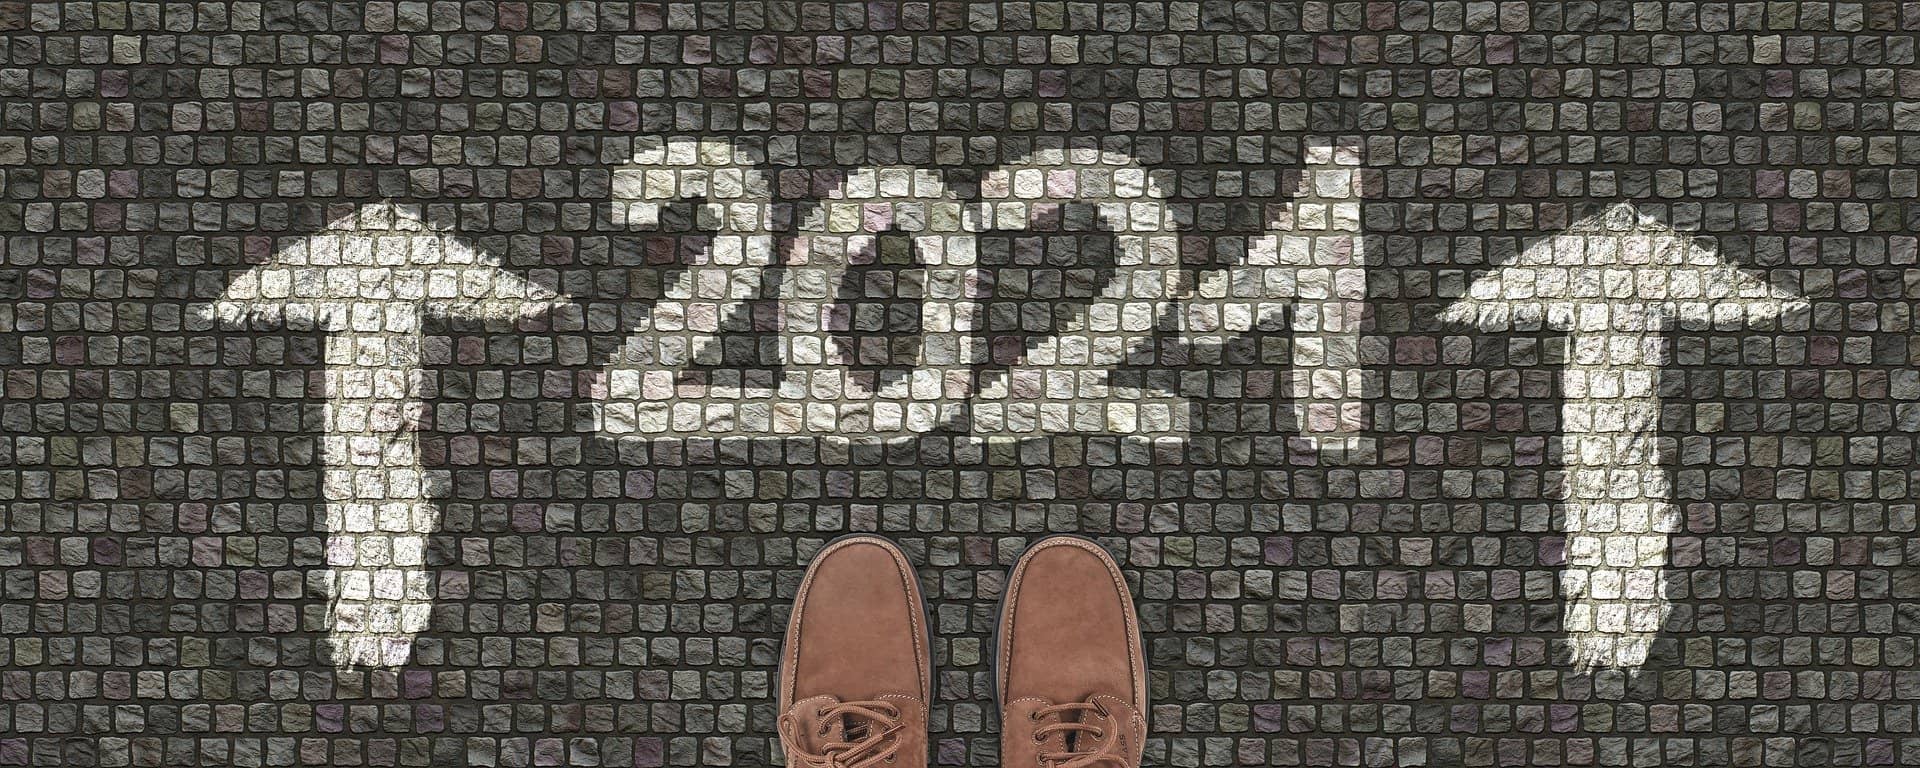 ¡FELIZ AÑO 2021! UNA MIRADA Y REVISIÓN 2